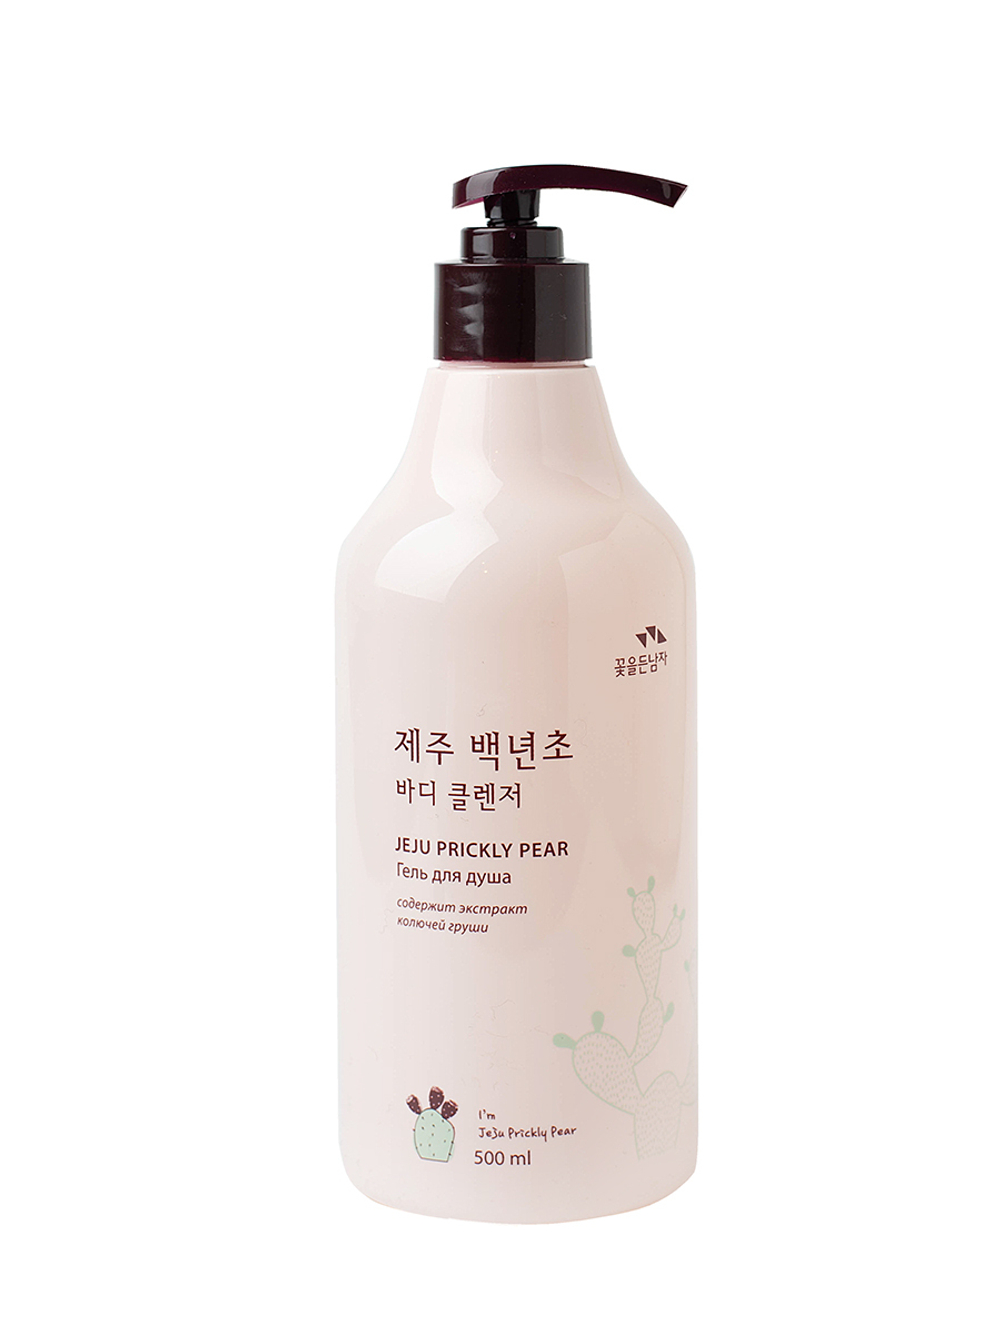 Гель для душа с экстрактом кактуса Flor de Man Jeju Prickly Pear Body Cleanser